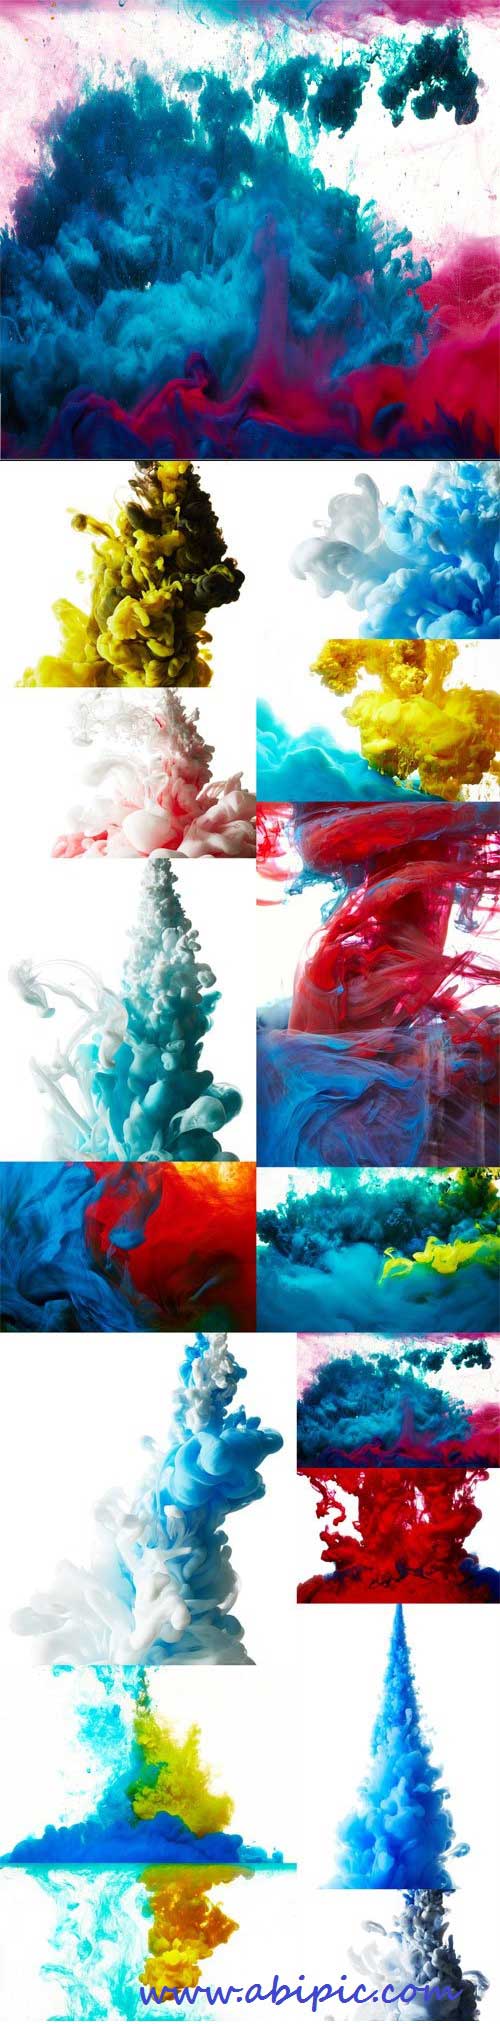 دانلود تصاویر استوک پس زمینه پودر و پخش رنگ شماره 2 Abstract paint splash